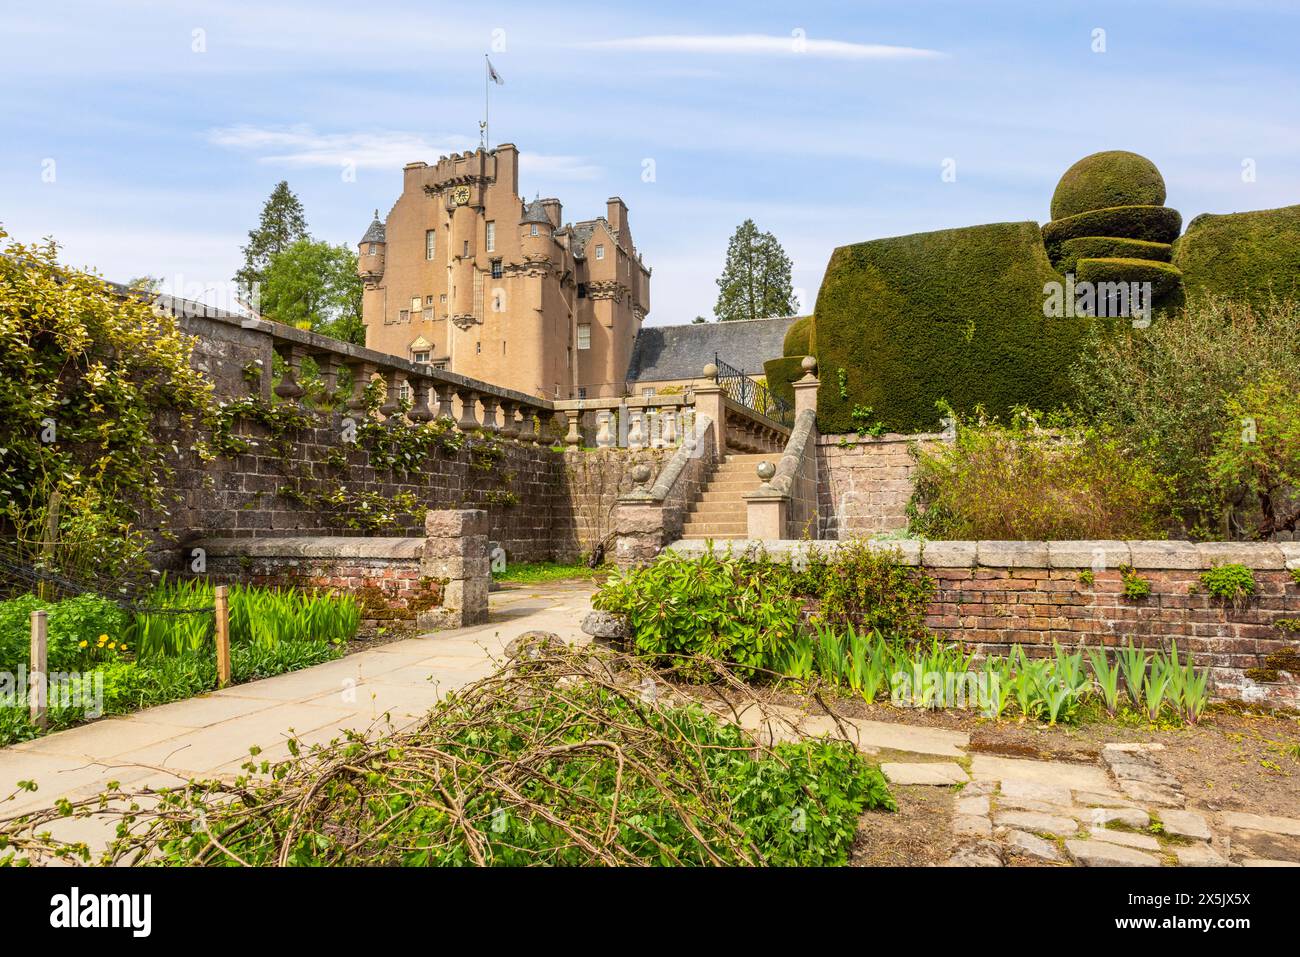 Crathes Castle, ein klassisches schottisches Turmhaus in Aberdeenshire, Schottland, bietet bezaubernde Türme und wunderschöne Gärten. Stockfoto